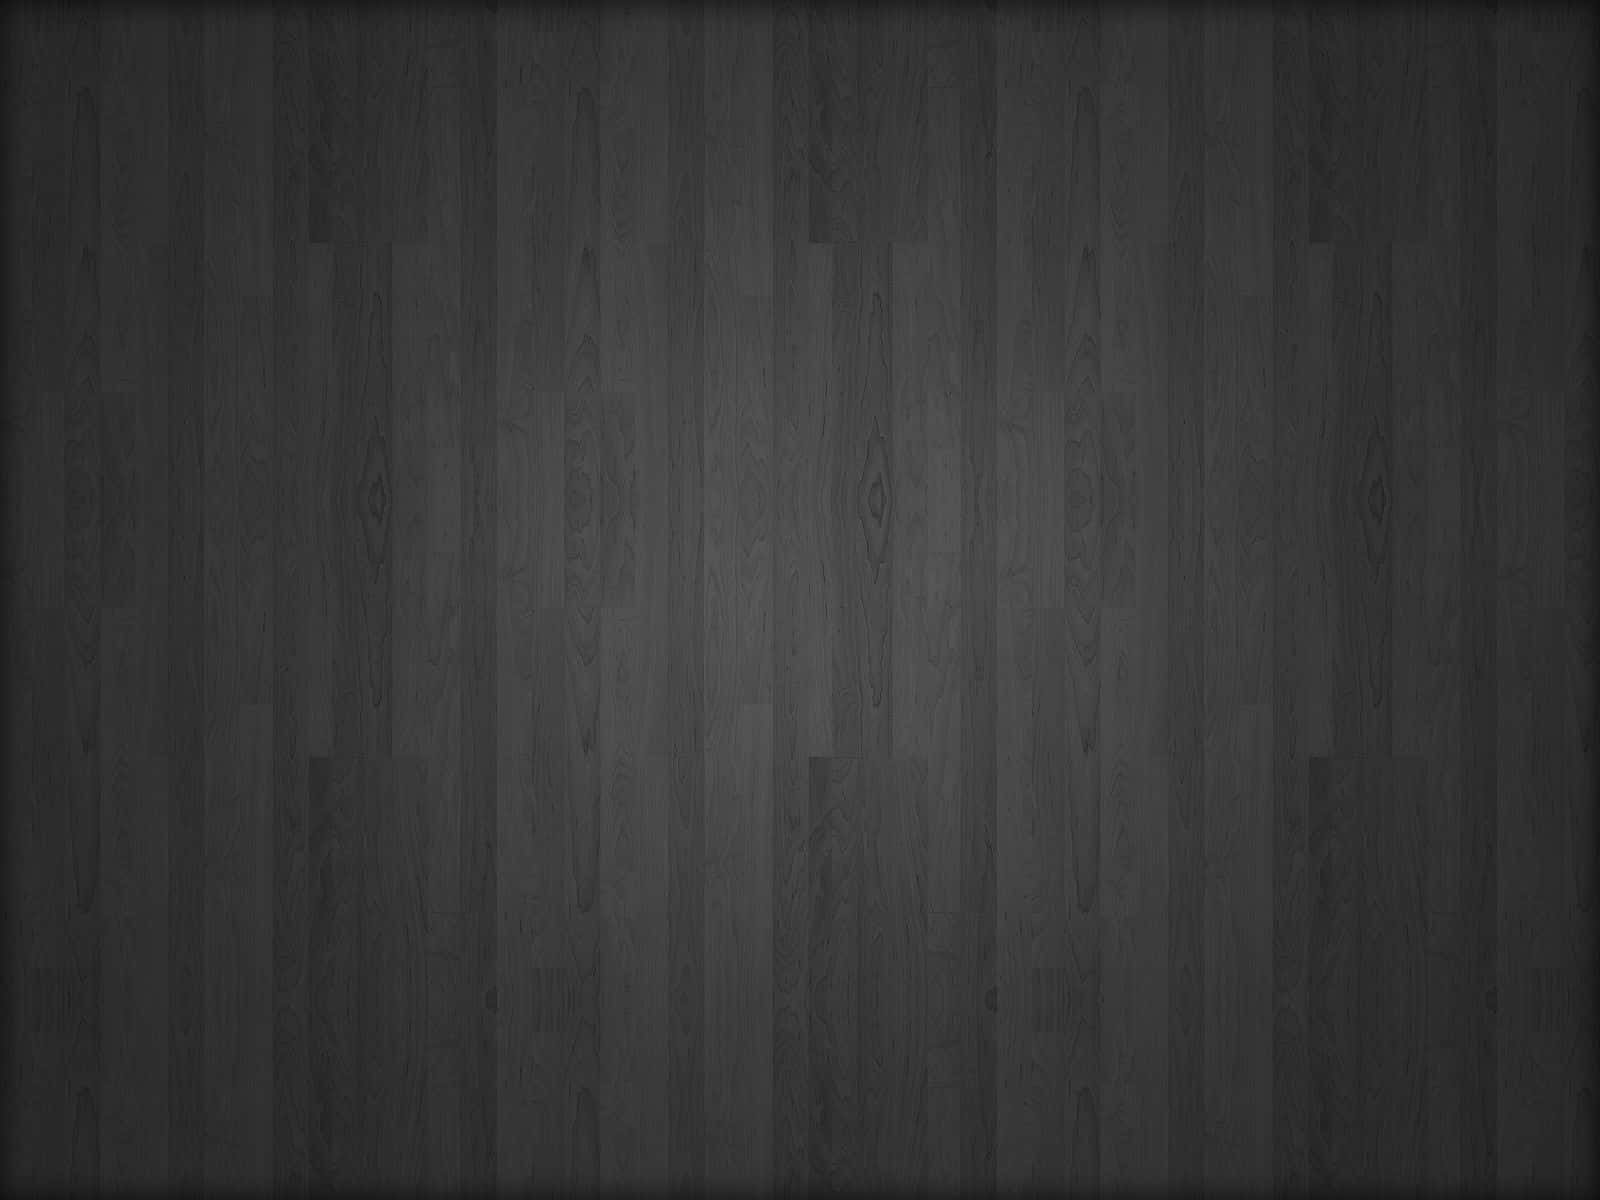 Wooden Planks Dark Grey Background